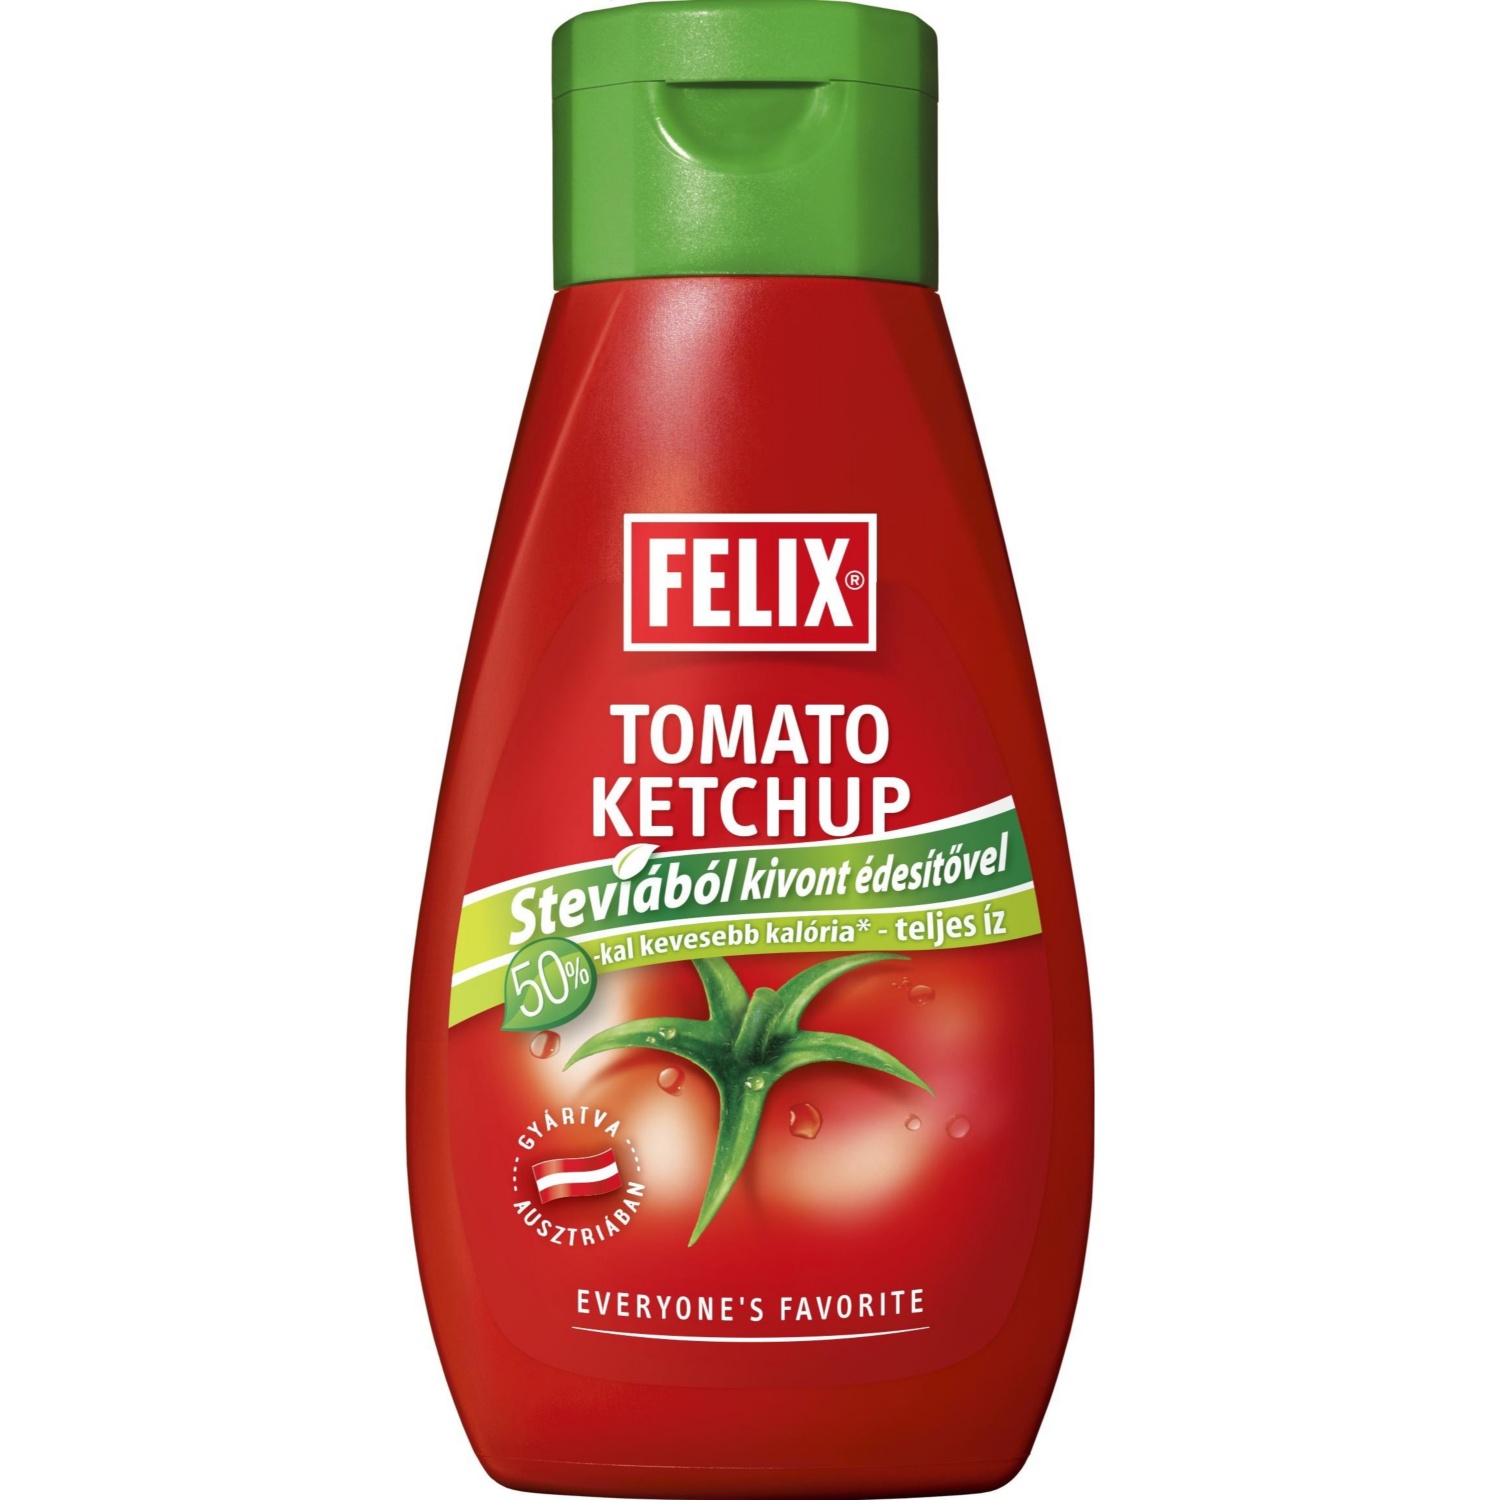 FELIX ketchup stevia édesítőszerrel, 435g